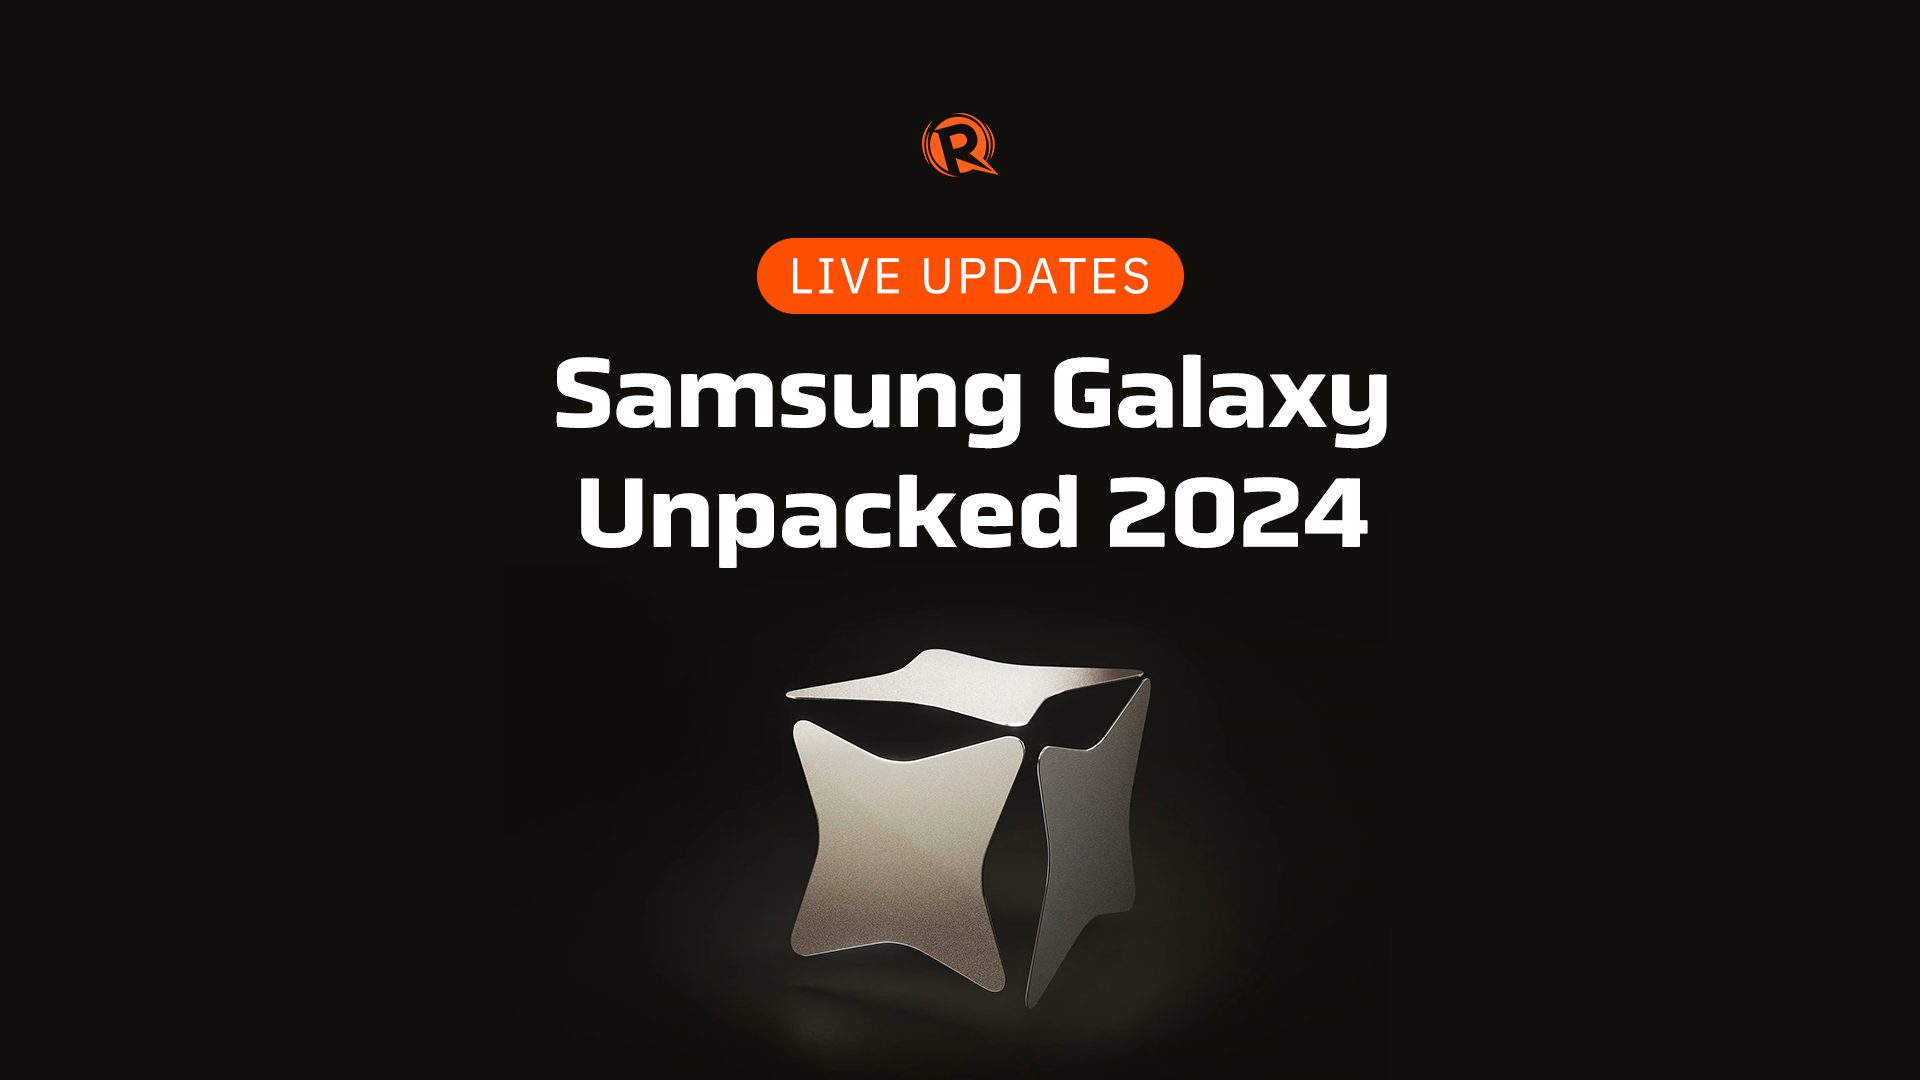 LIVE UPDATES Samsung Galaxy Unpacked 2024